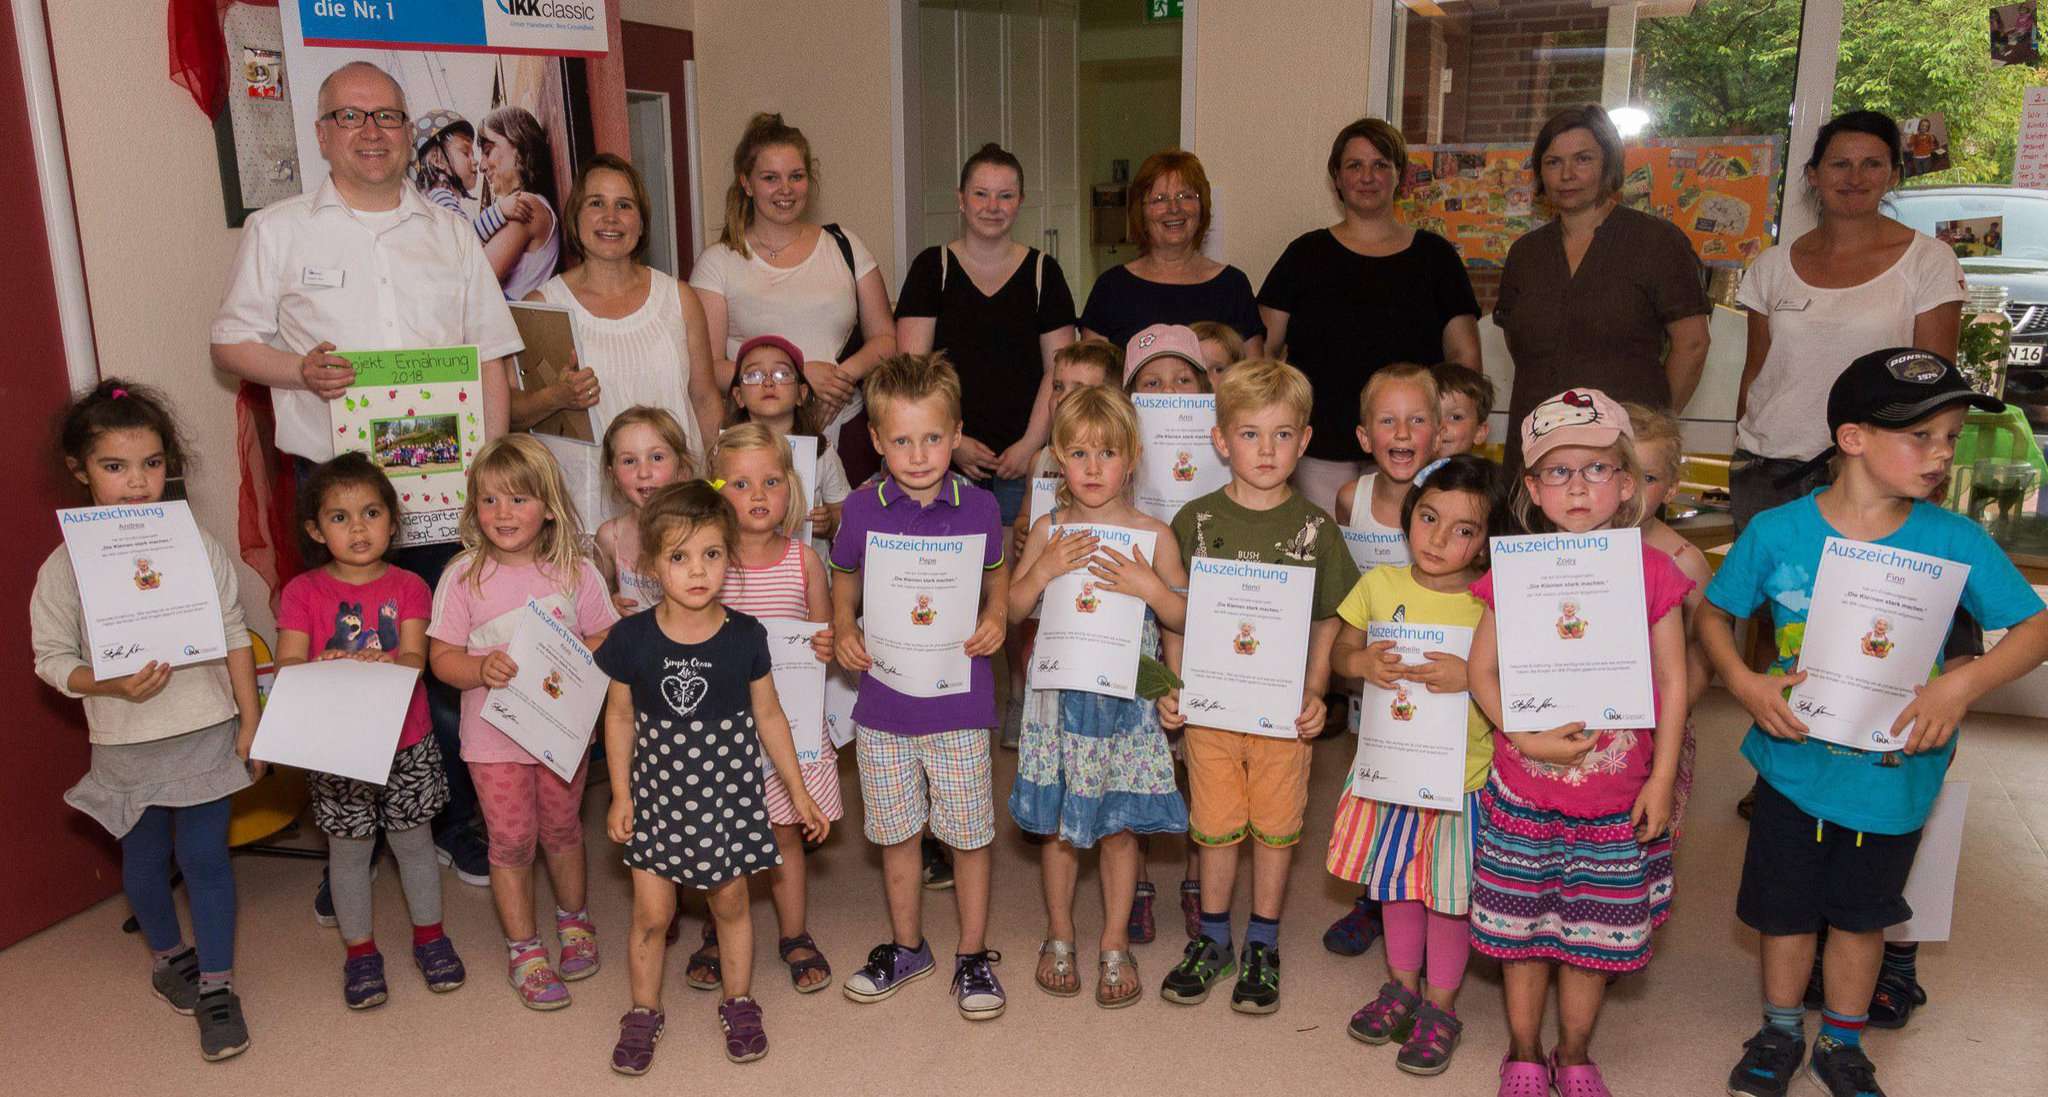 Die Kindergartenkinder lernen viel über gesunde Ernährung und bekommen am Ende der Projekttage eine Urkunde für die erfolgreiche Teilnahme. Fotos: Klaus-Dieter Plage